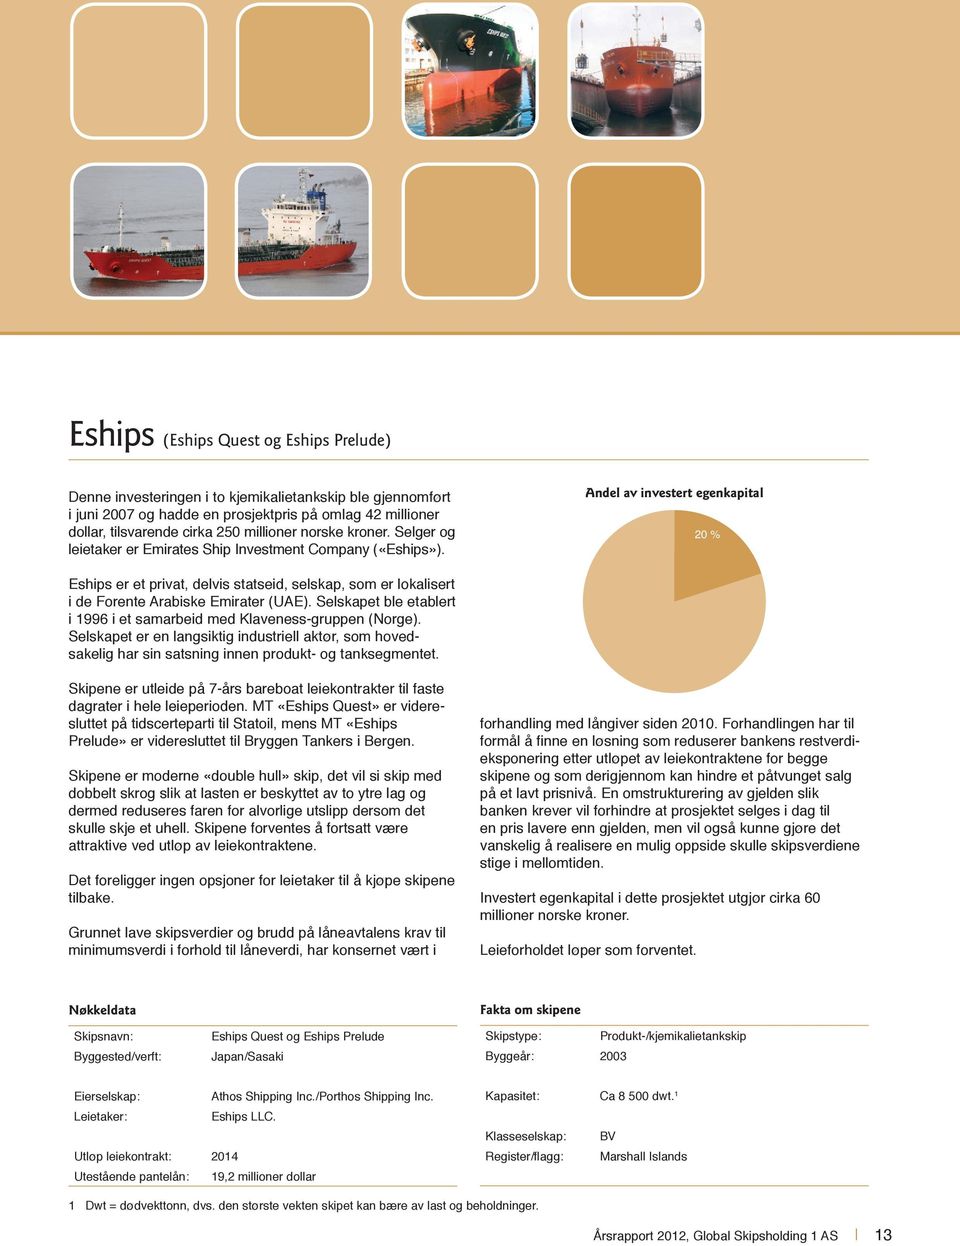 Andel av investert egenkapital 20 % Eships er et privat, delvis statseid, selskap, som er lokalisert i de Forente Arabiske Emirater (UAE).